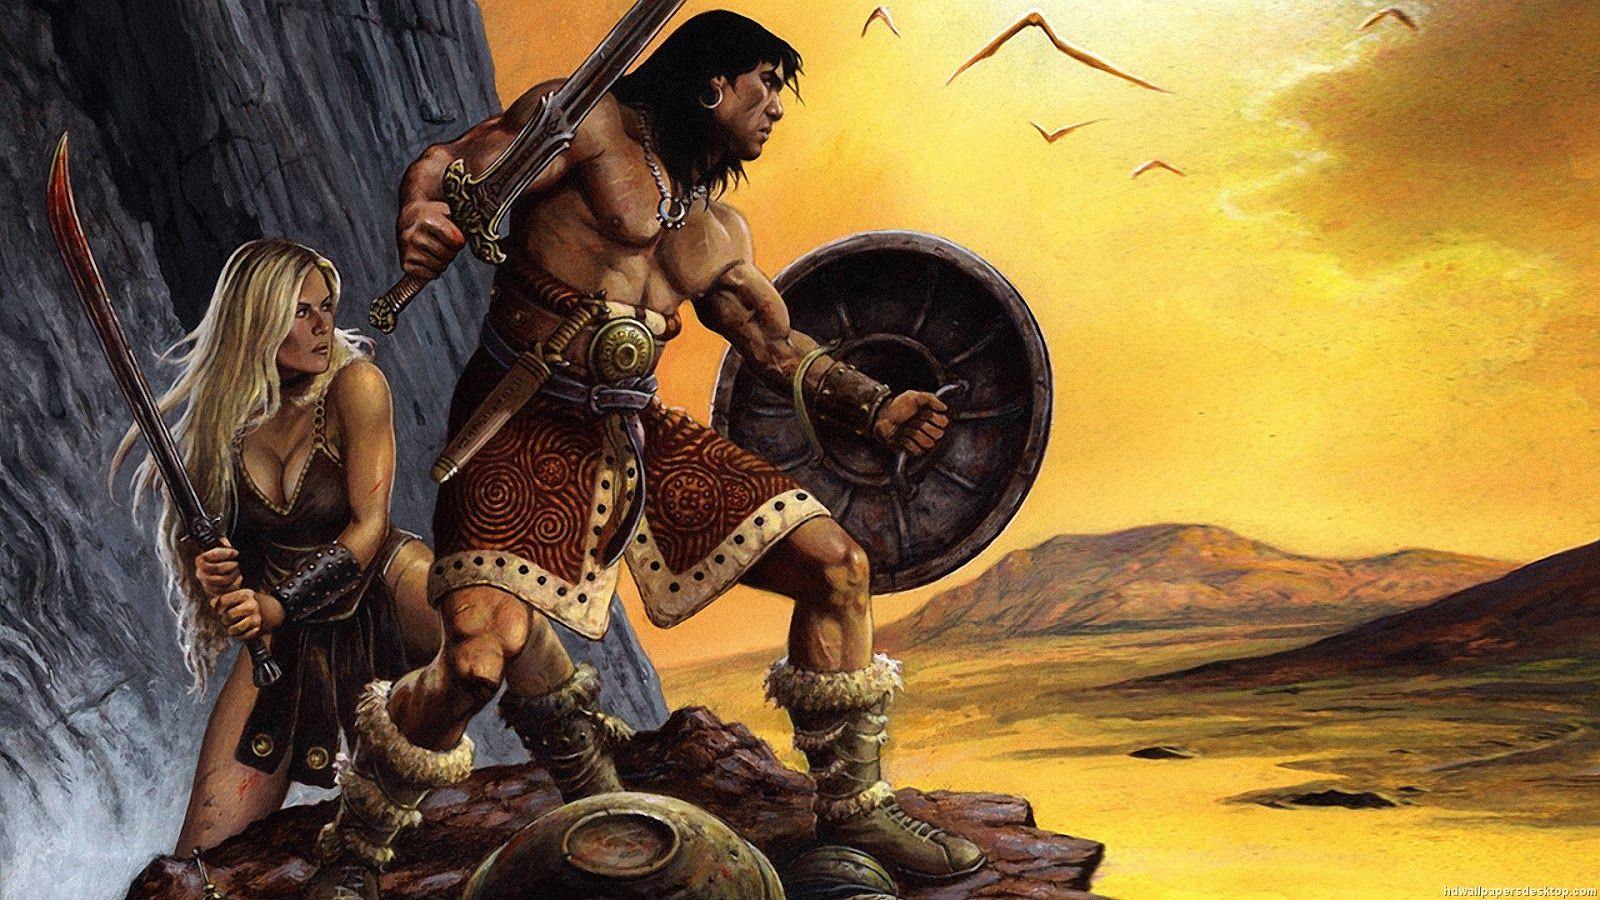 Conan the Barbarian Wallpaper 7. Conan the barbarian, Conan movie